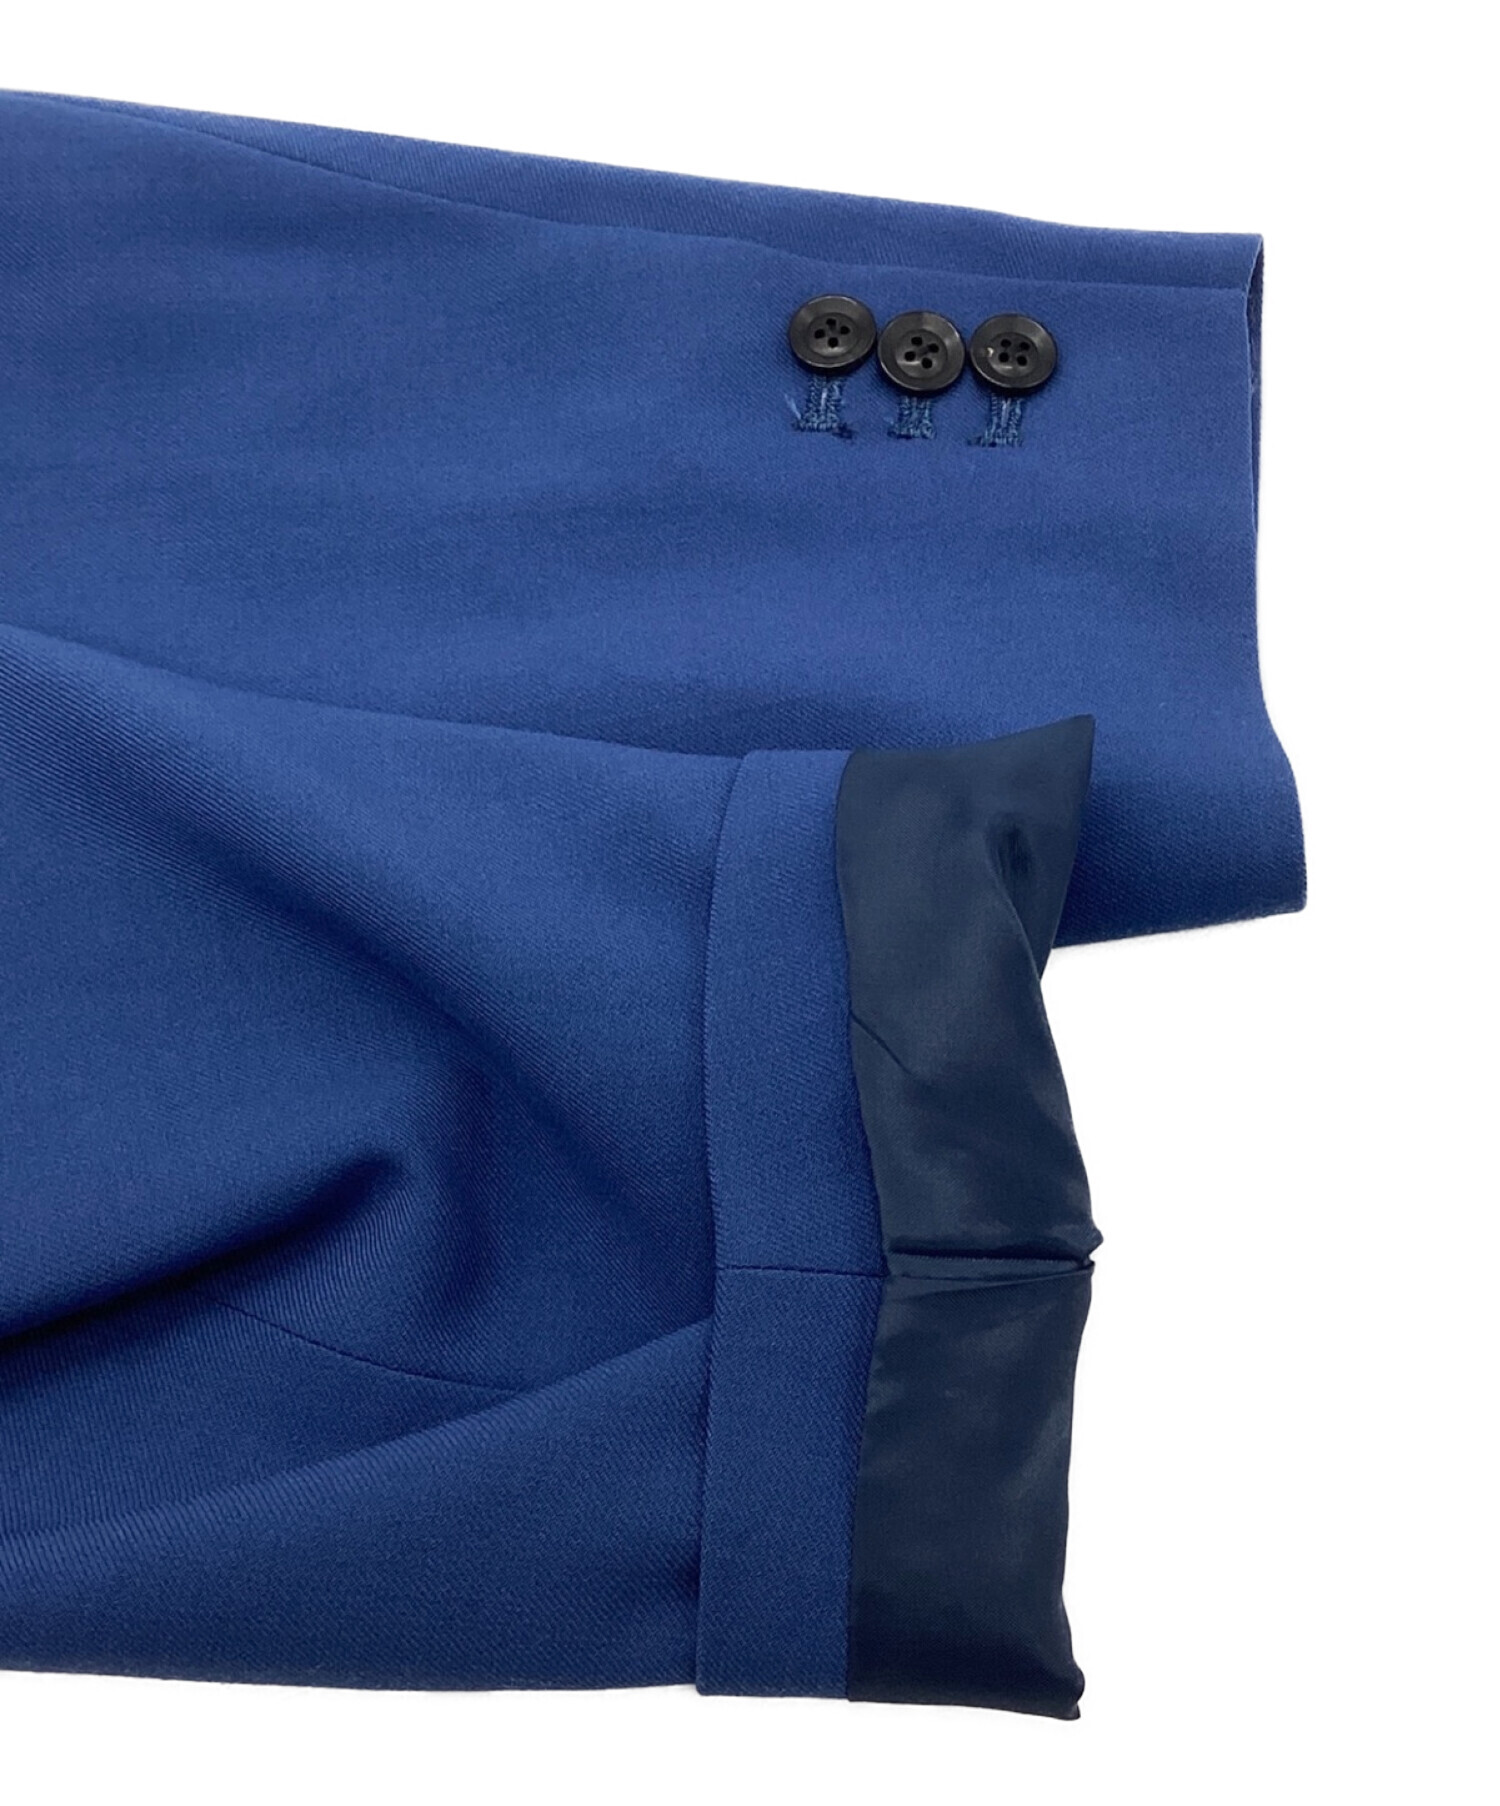 中古・古着通販】LiNoH (リノー) テーラードジャケット ブルー サイズ